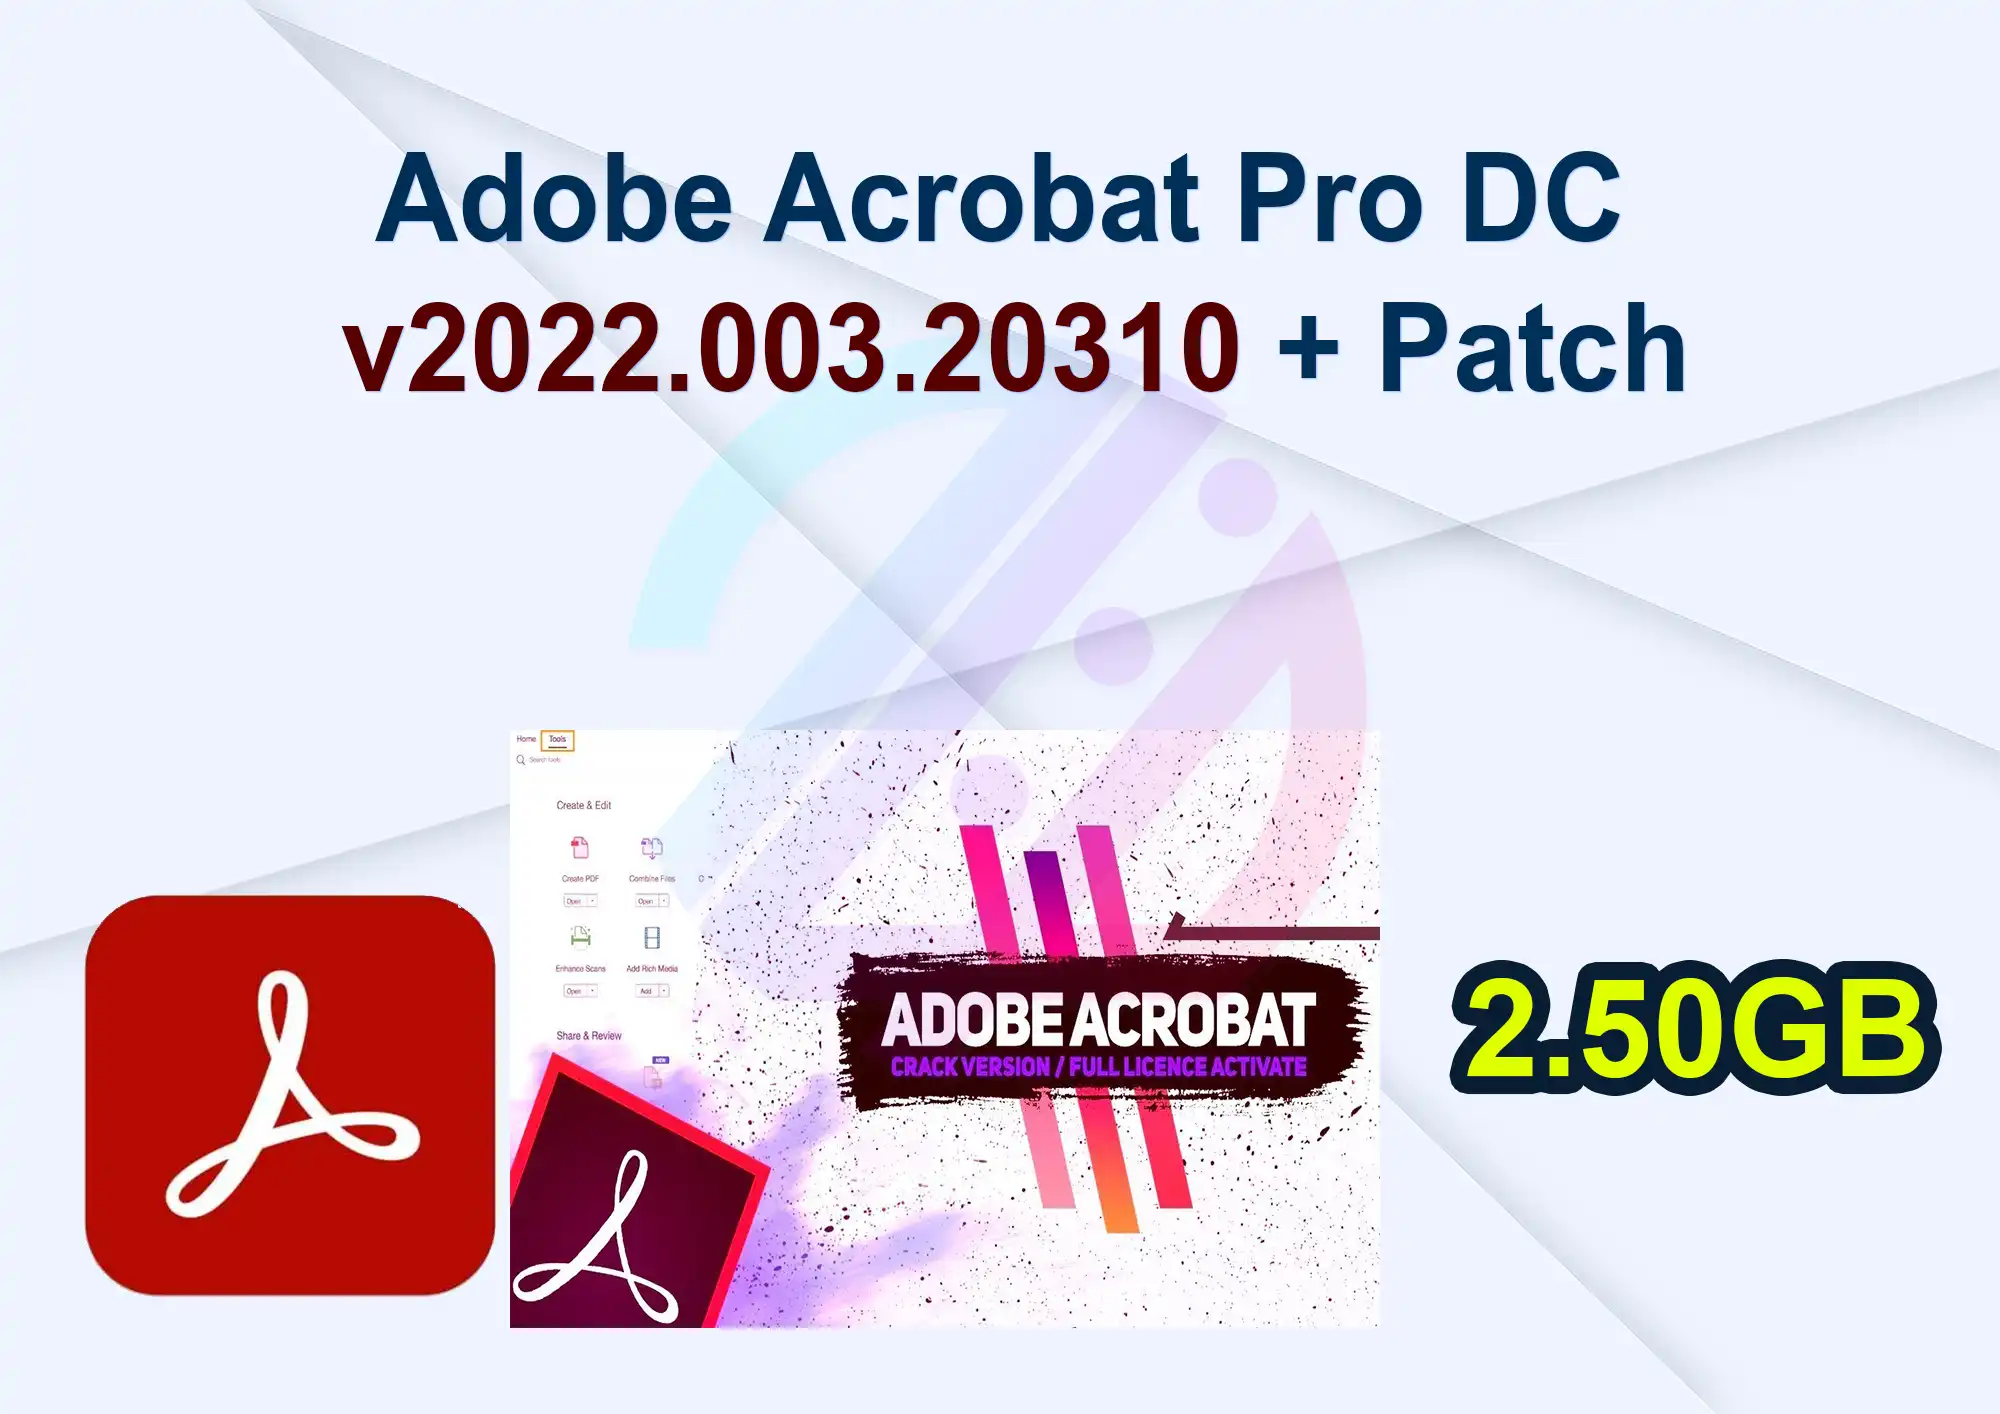 Adobe Acrobat Pro DC v2022.003.20310 + Patch